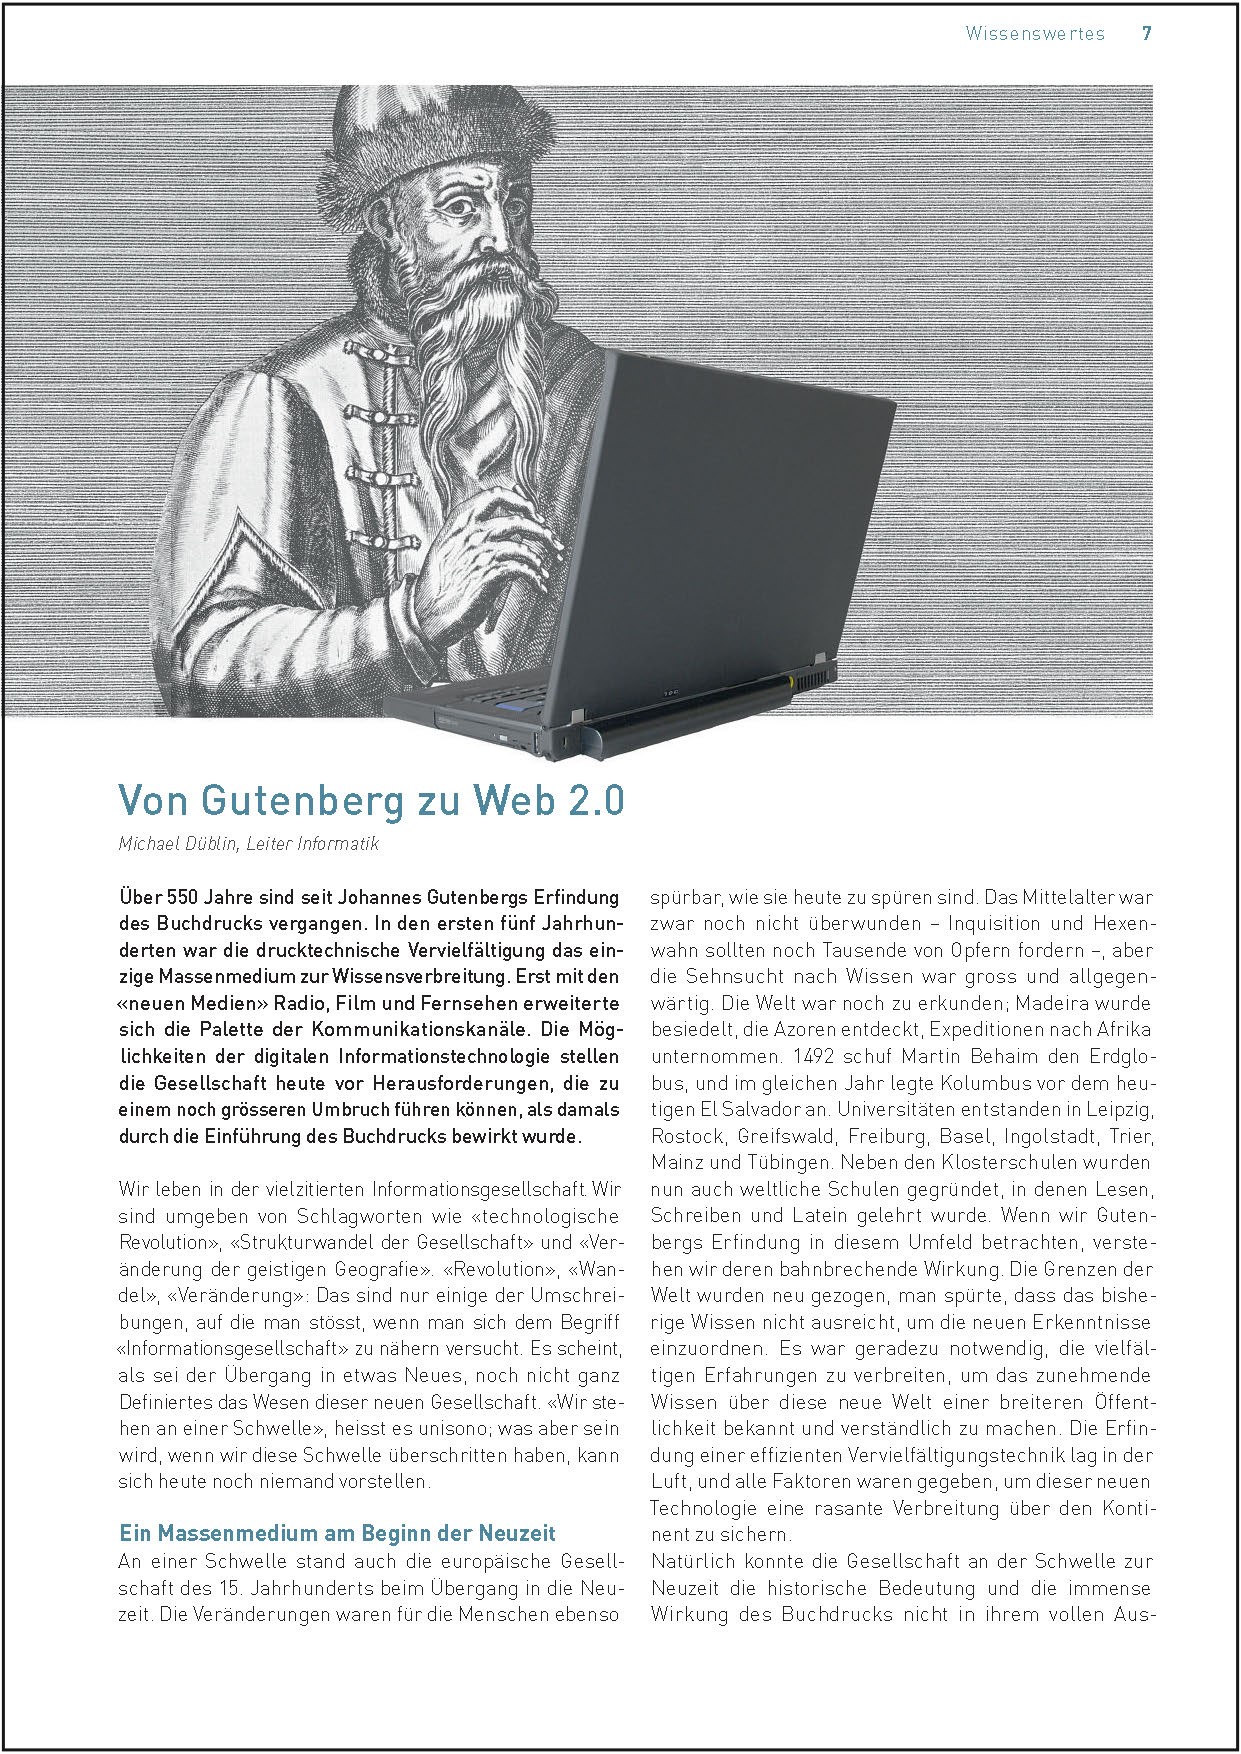 Von Gutenberg zu Web 2.0